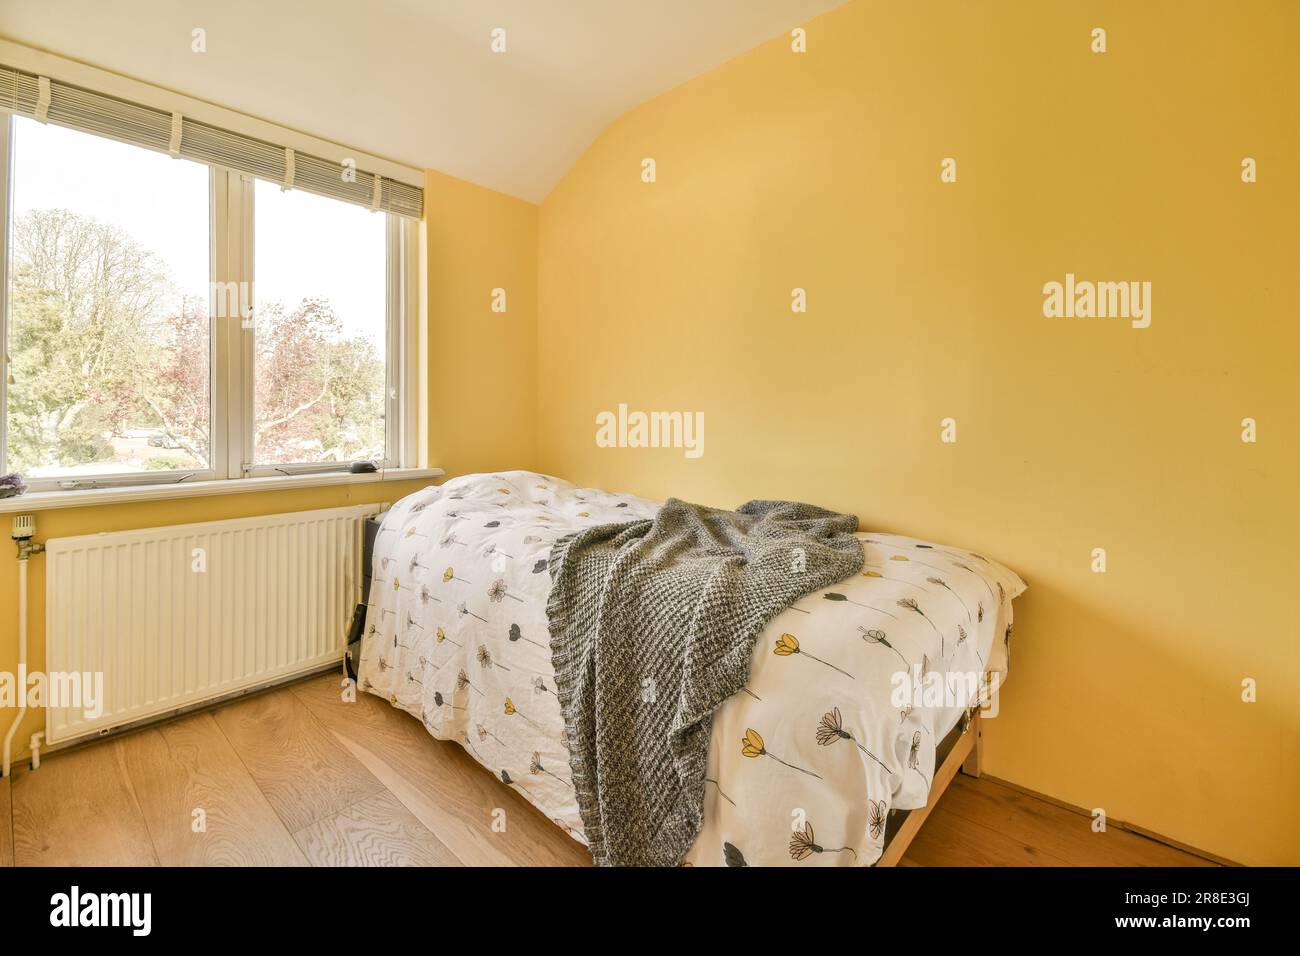 Ein Schlafzimmer mit gelben Wänden und Hartholzfußboden, die das Licht zeigen, das durch die großen Fensterscheiben hereinkommt Stockfoto